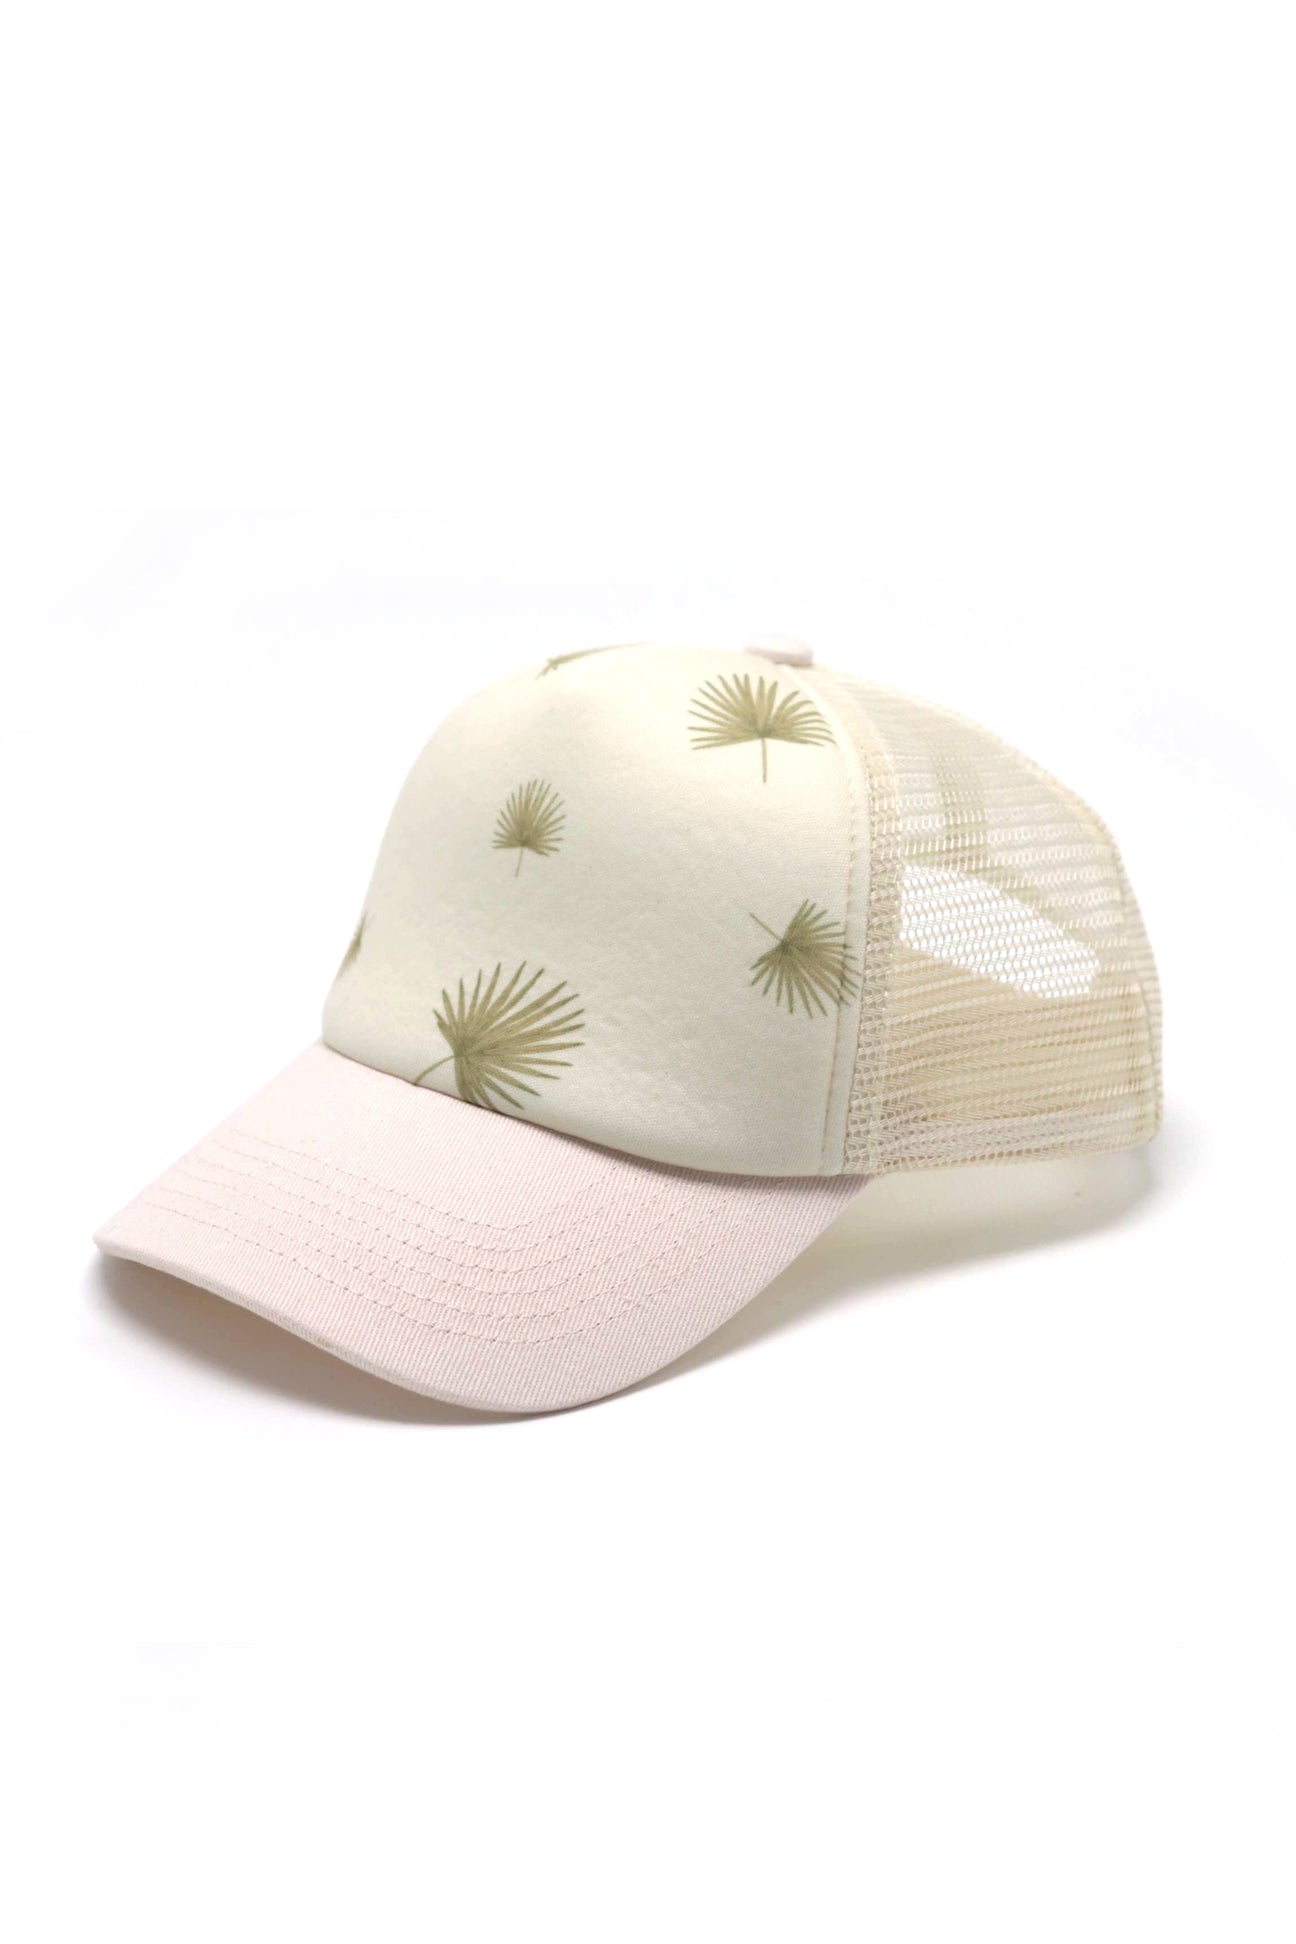 Keiki Trucker Hat - Fan Palm